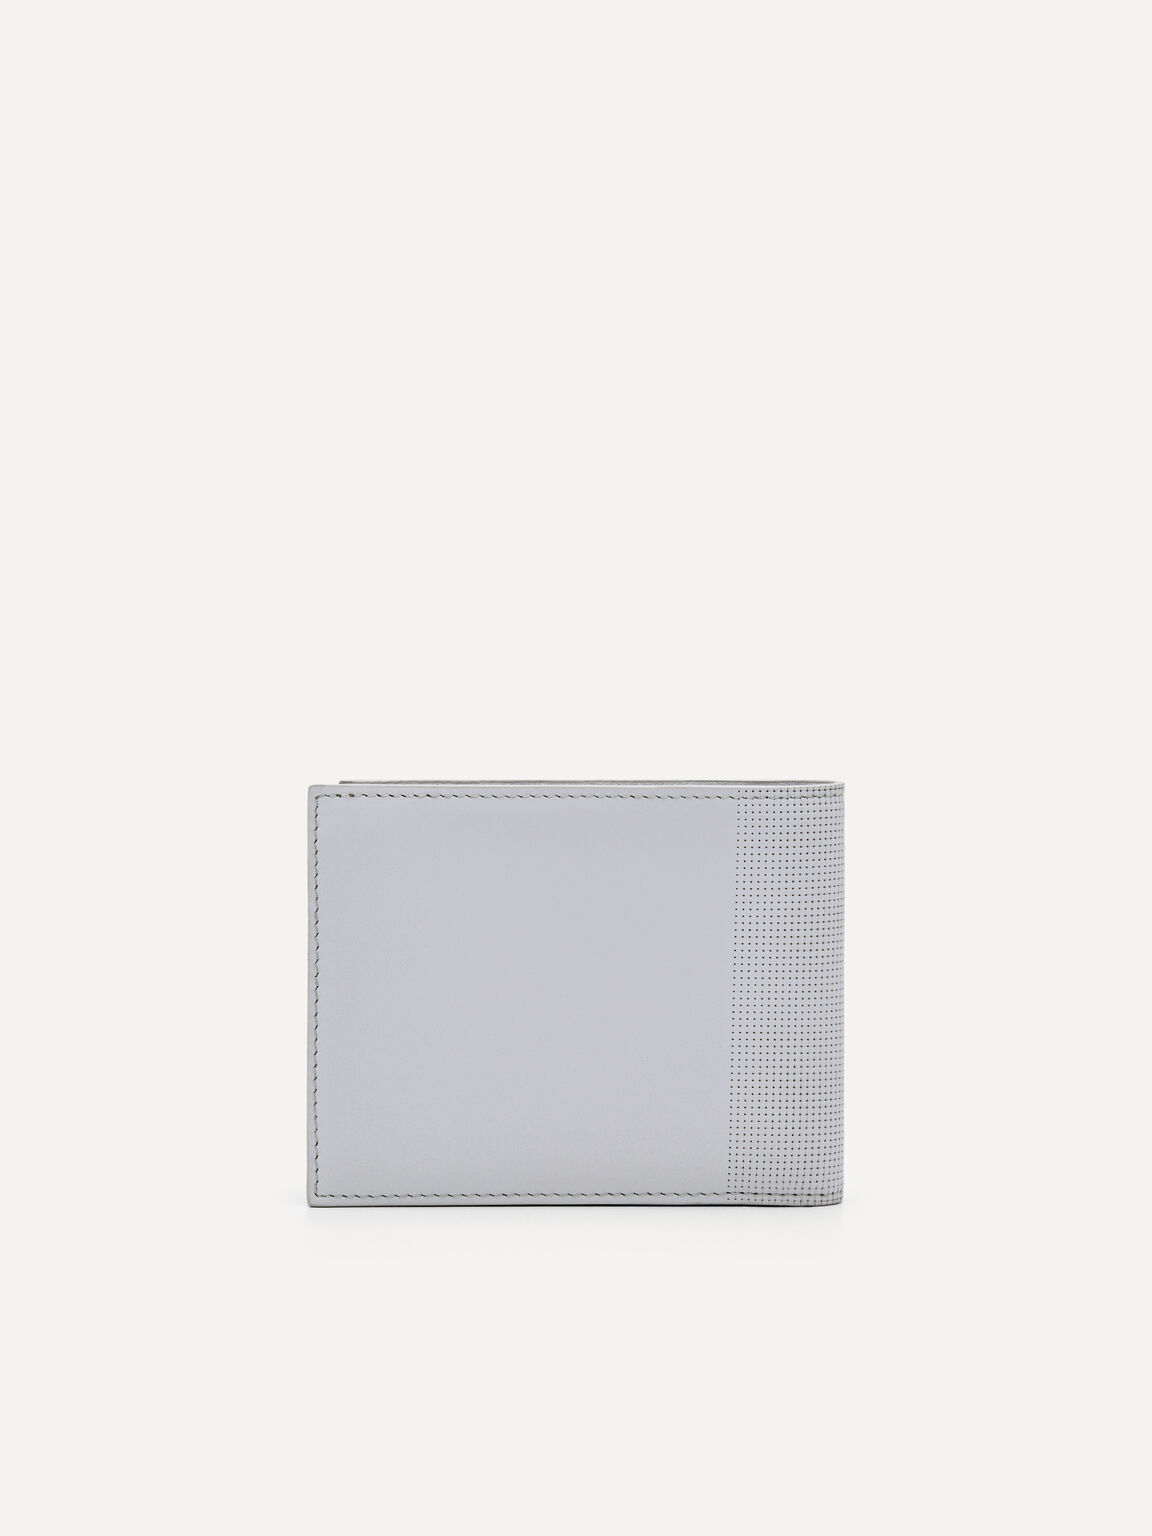 Oliver Leather Bi-Fold Wallet with Insert, Light Grey, hi-res